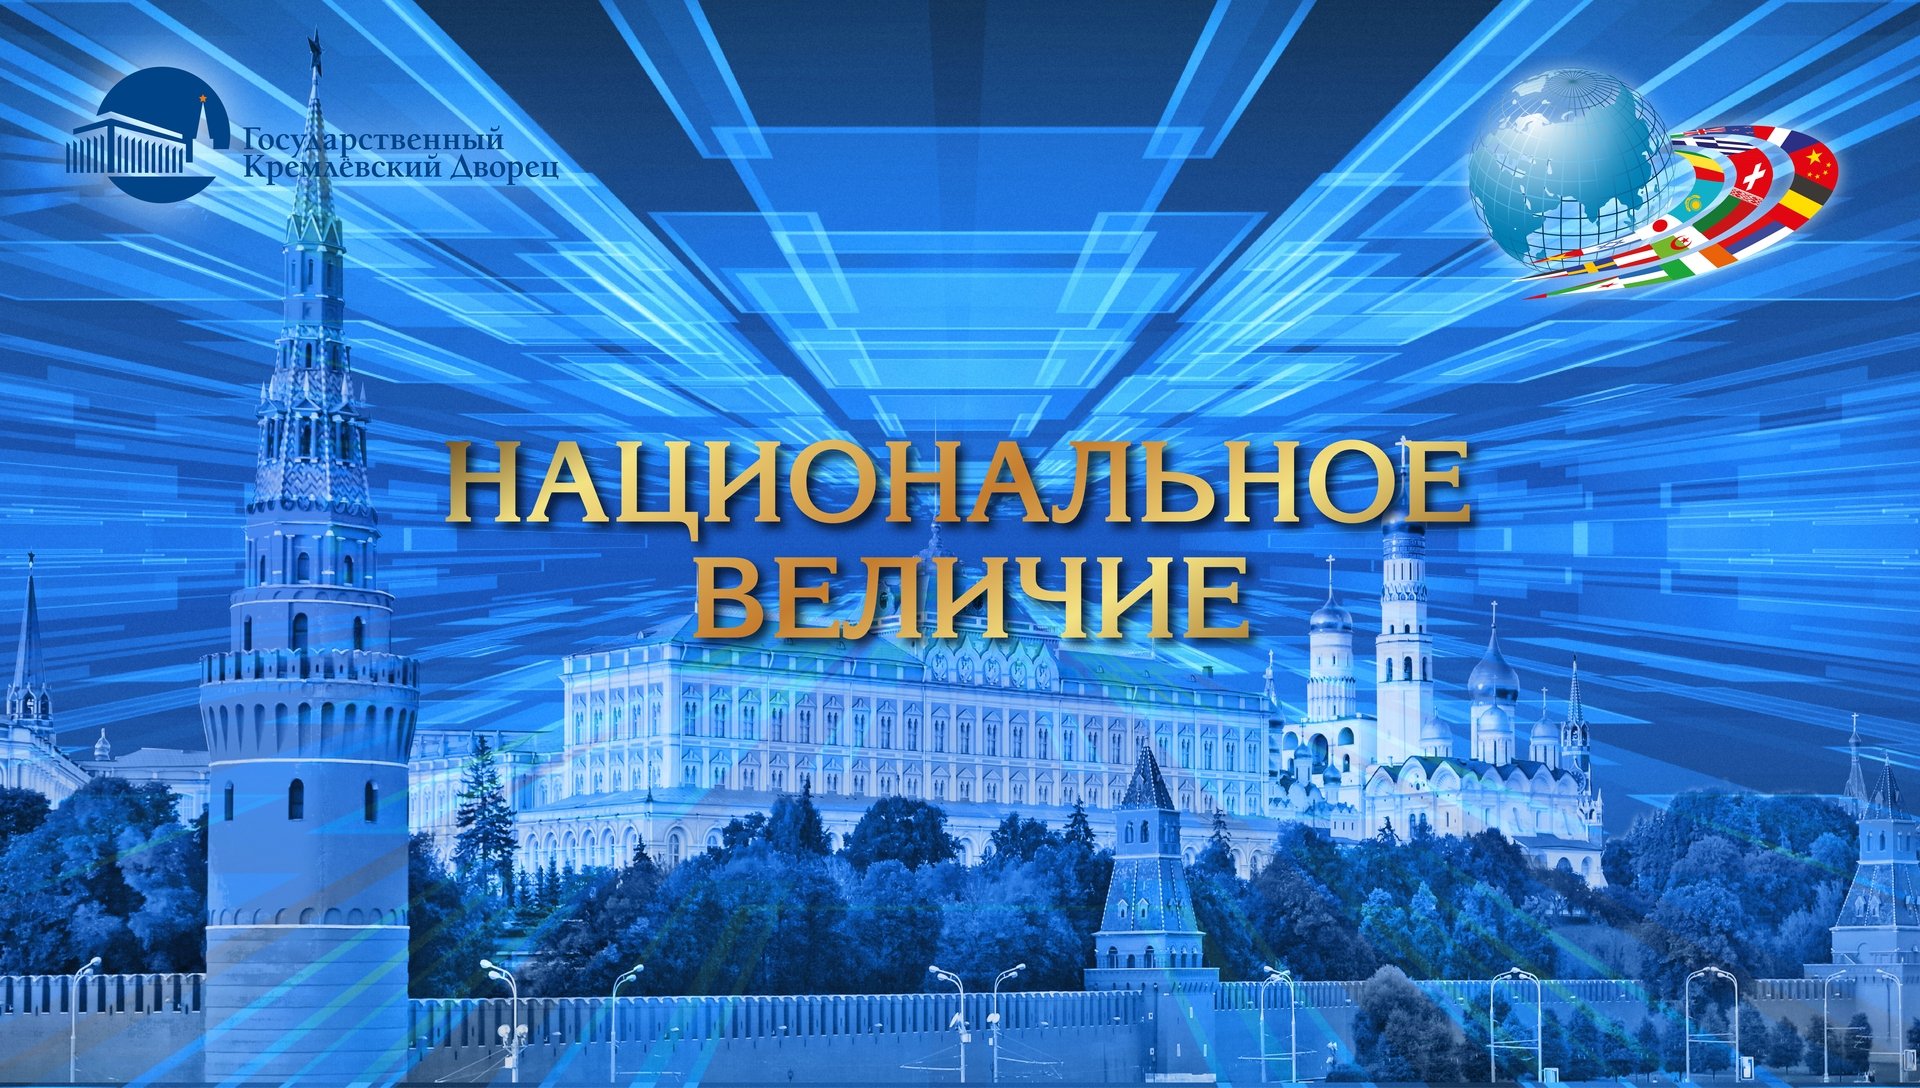 Кремлевский дворец афиша на 2024 год. ГКД логотип. Кремлевский дворец логотип. Государственный Кремлёвский дворец лого логотип. Кремлевский концертный зал логотип.